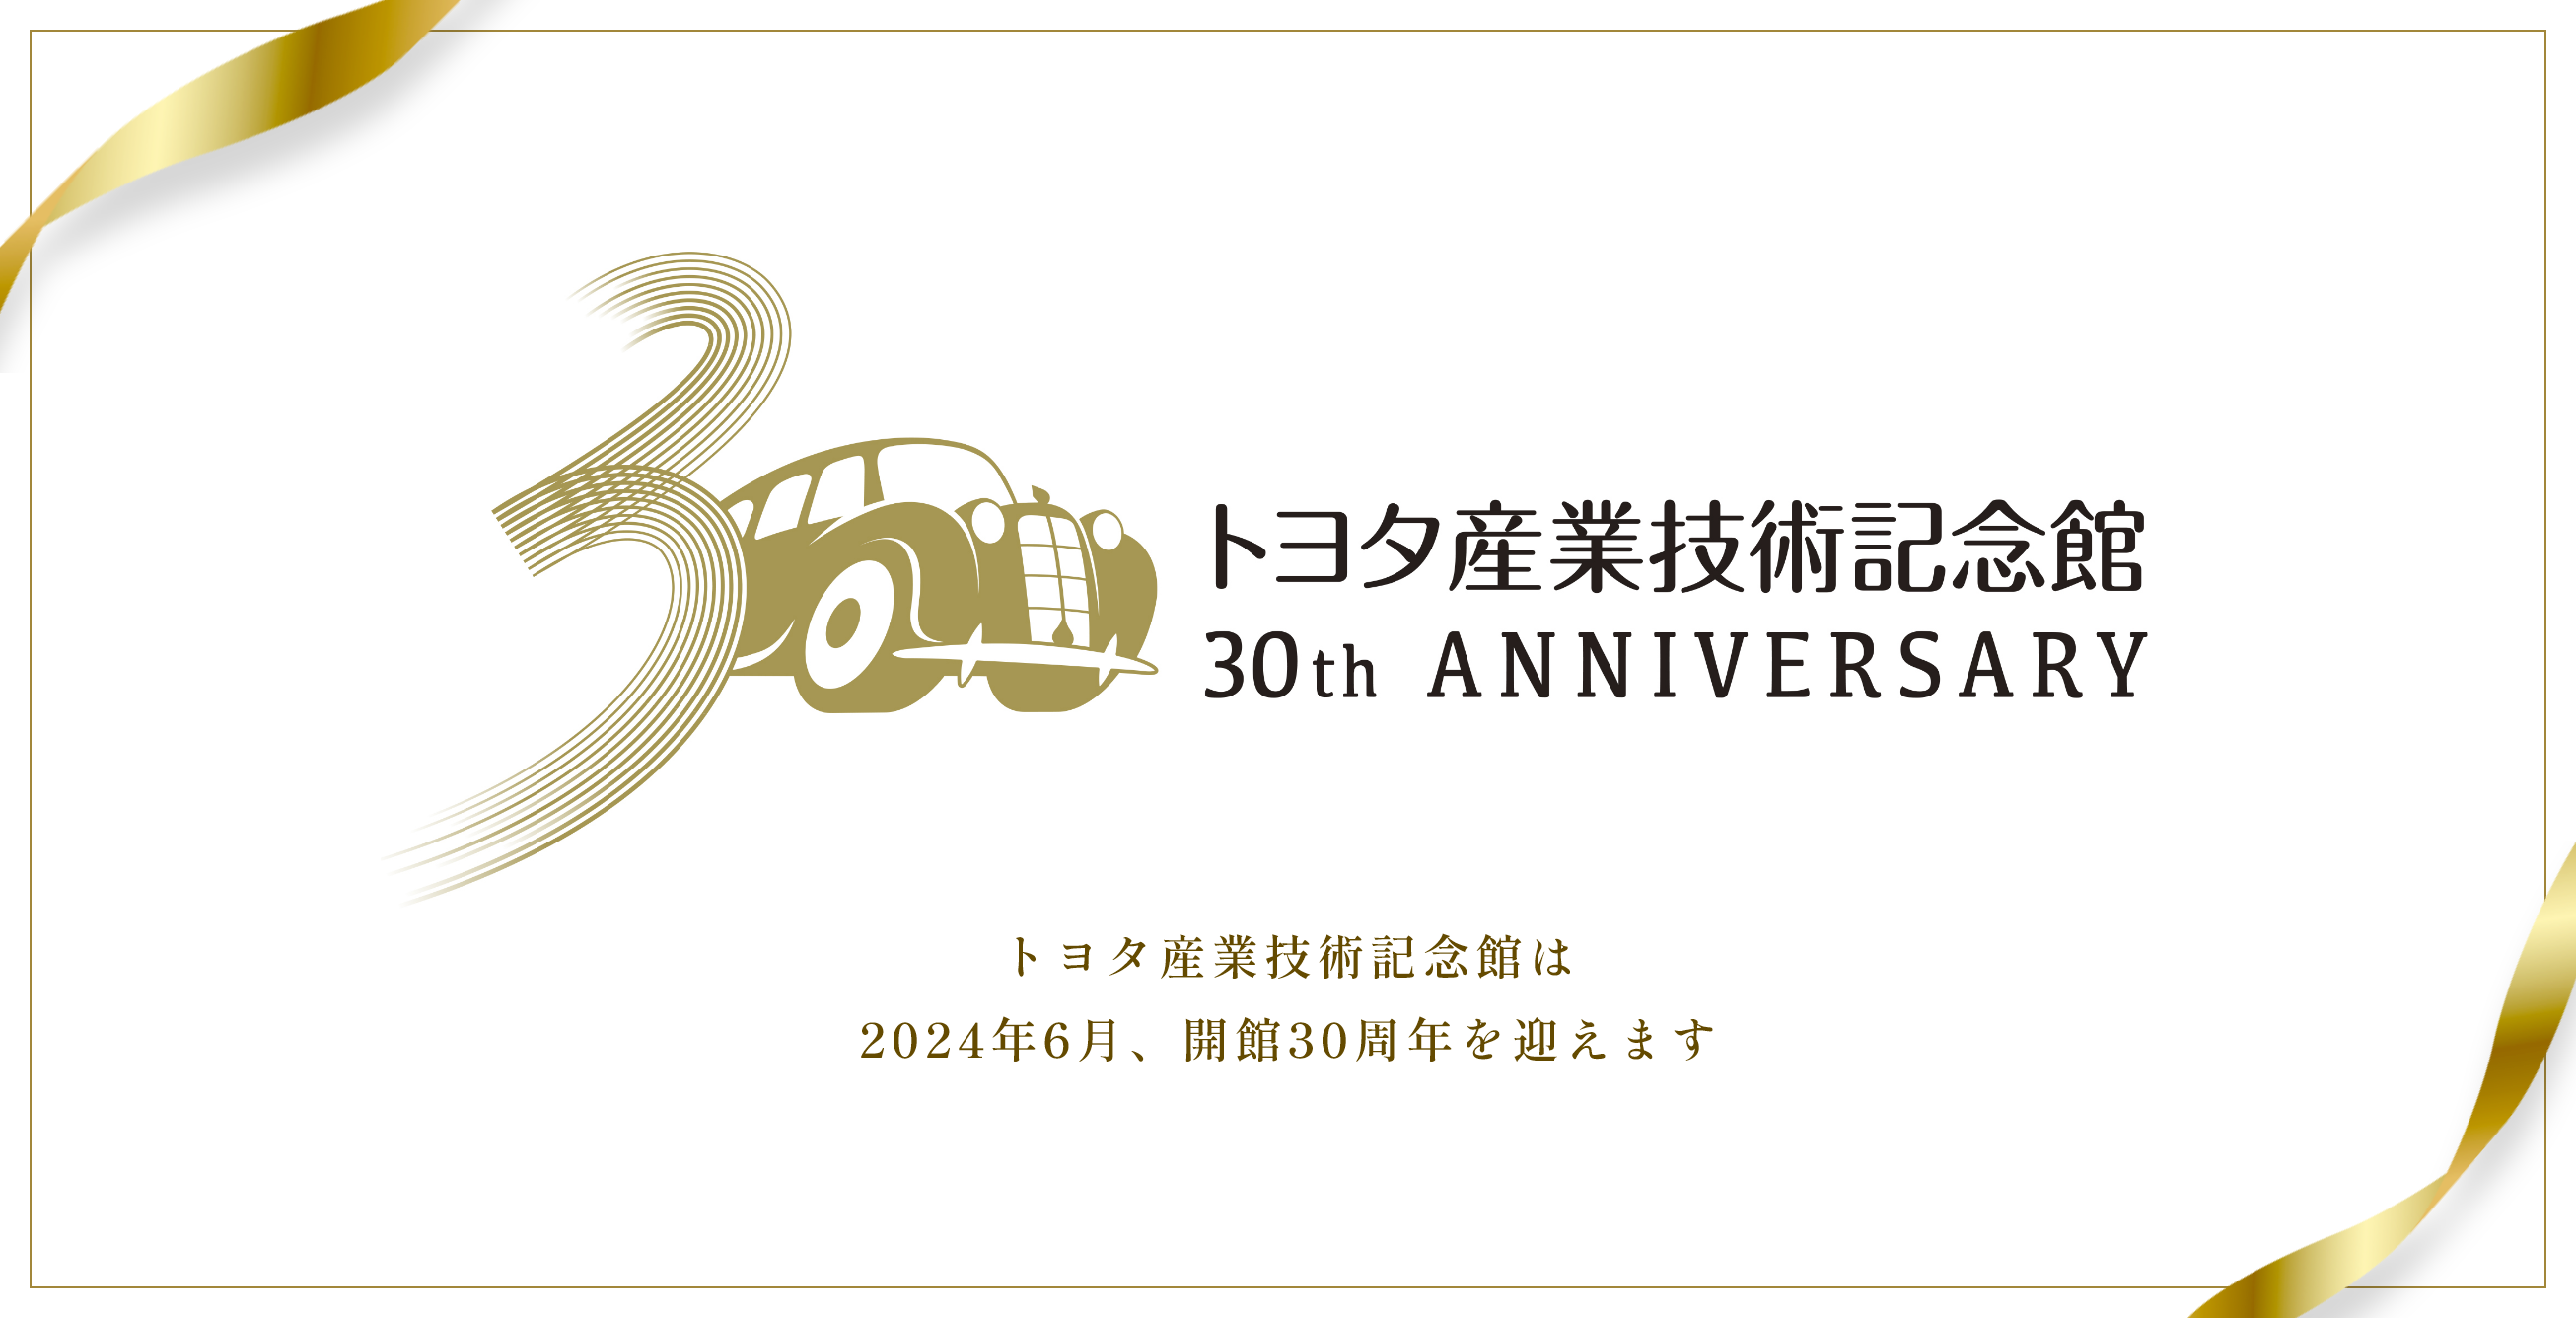 トヨタ産業技術記念館は2024年6月、開館30周年を迎えます